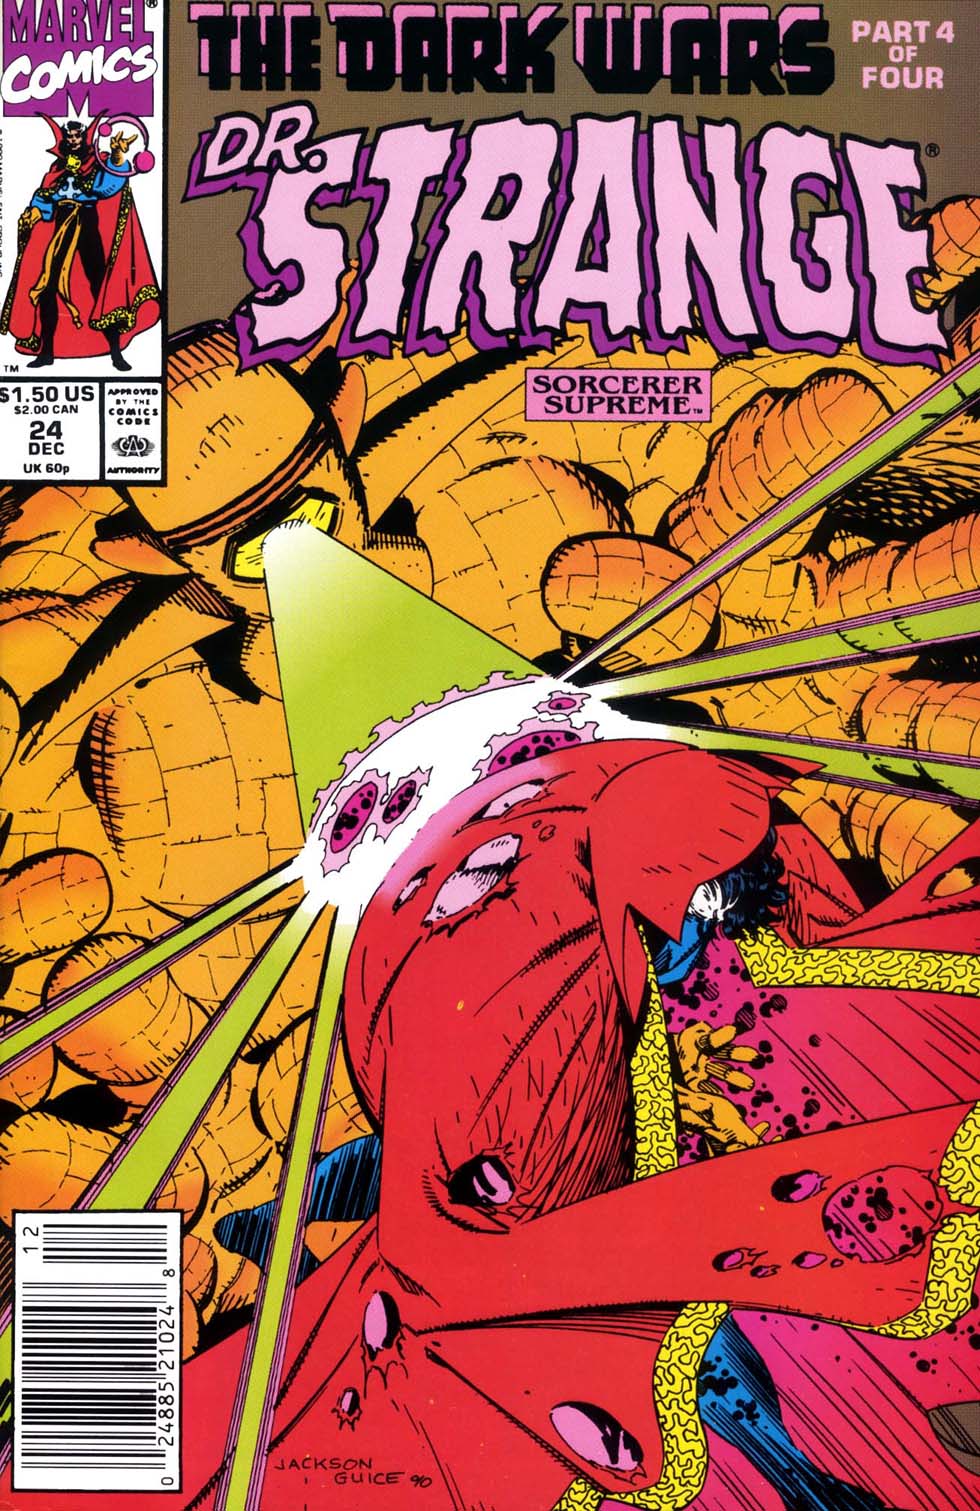 Doctor Strange: Sorcerer Supreme 24 Page 1